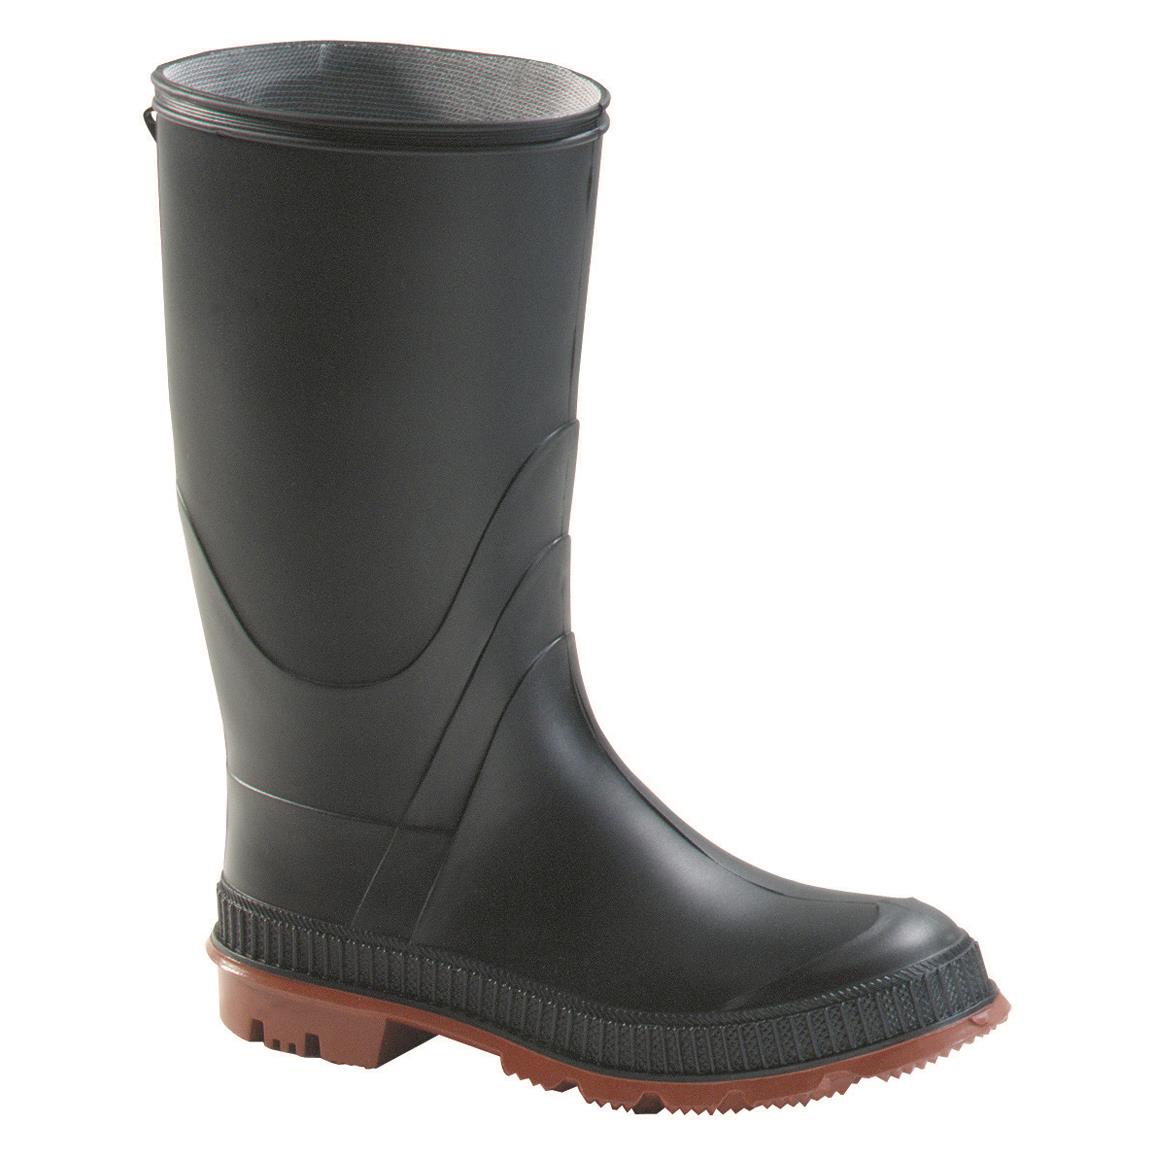 GENFOOT Kids' Blazer Waterproof Rubber Boots, Black/Red